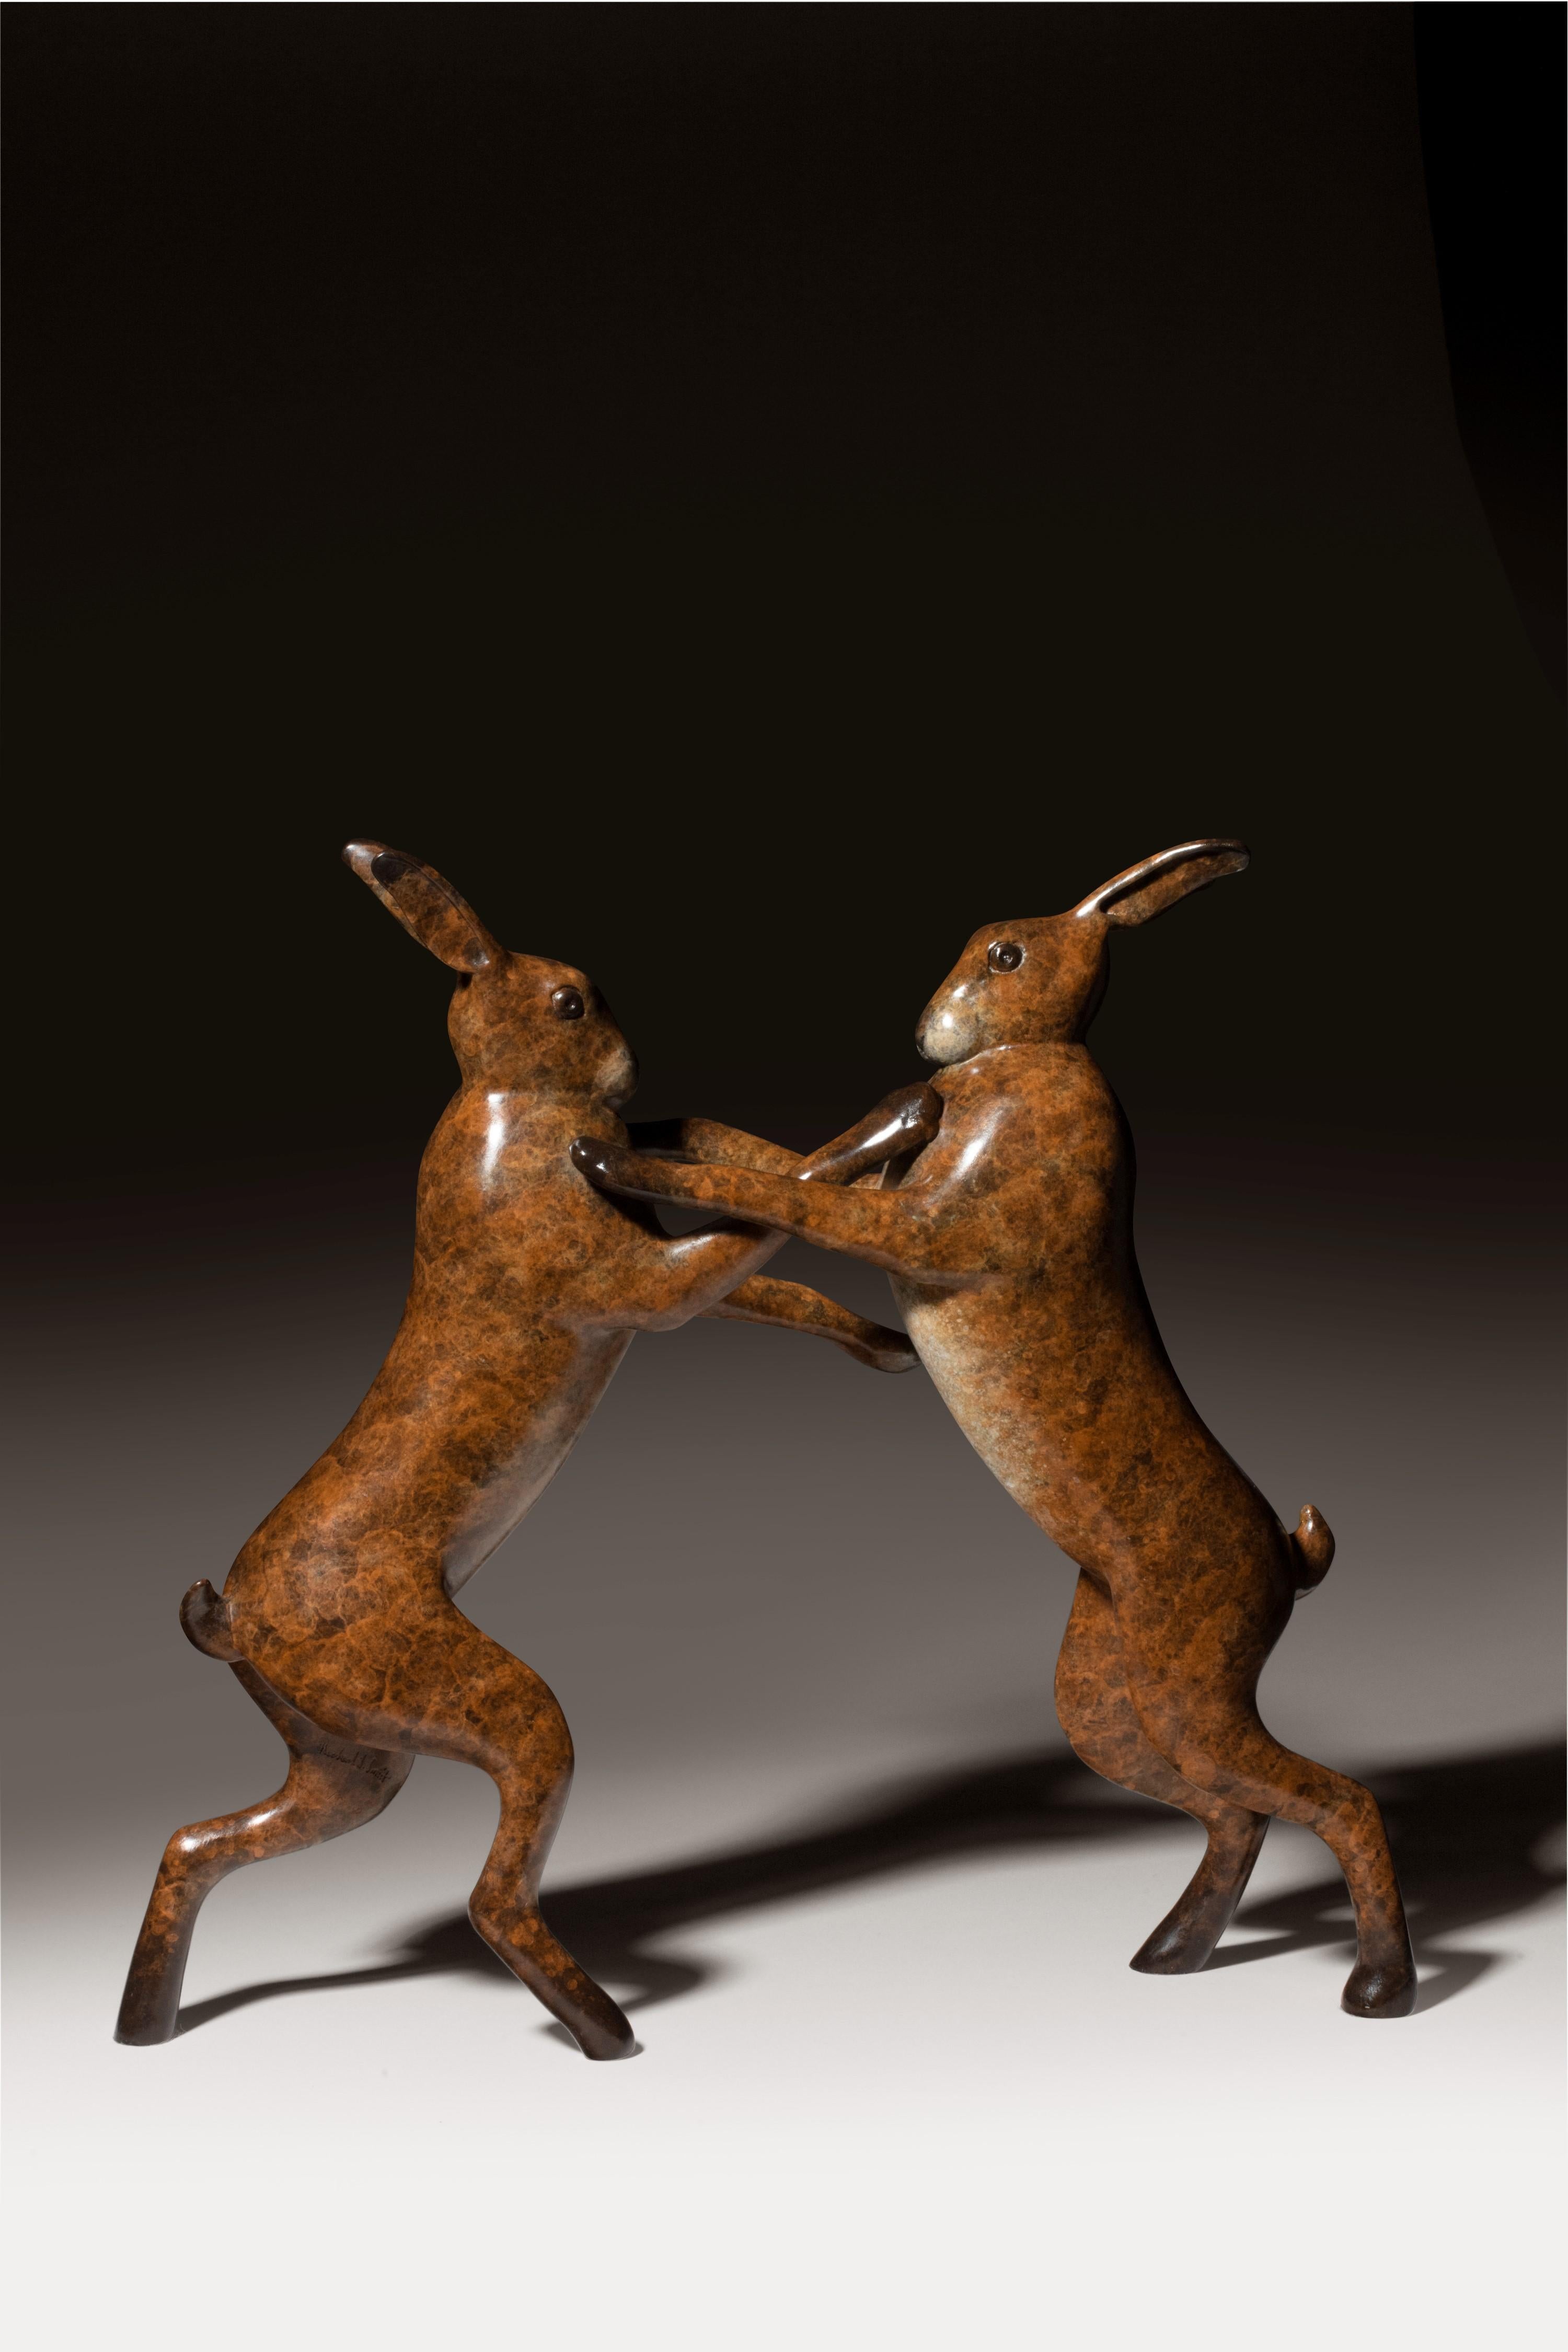 boxing Hares" est une sculpture en bronze d'une élégance étonnante. Richard Smith transmet tant de caractère dans des lignes si simples, illustrant un talent vraiment merveilleux. La fantastique patine brune graduée richement détaillée ajoute